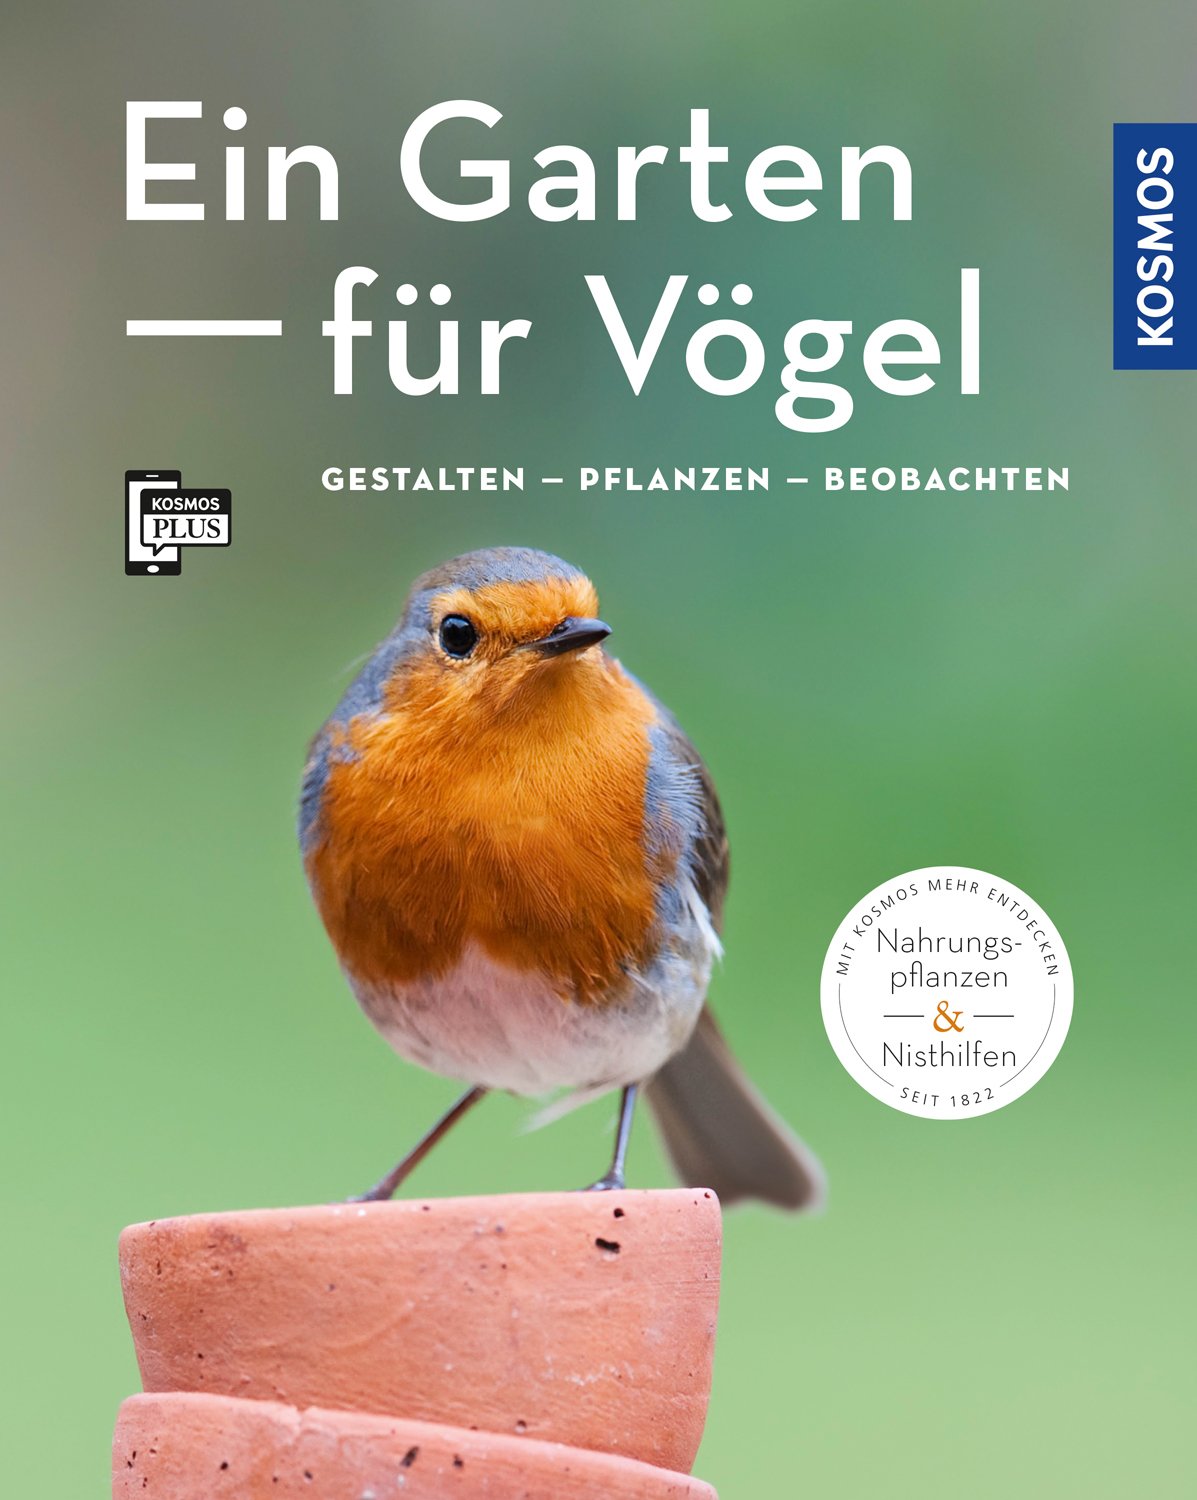 Ein Garten für Vögel (Mein Garten)